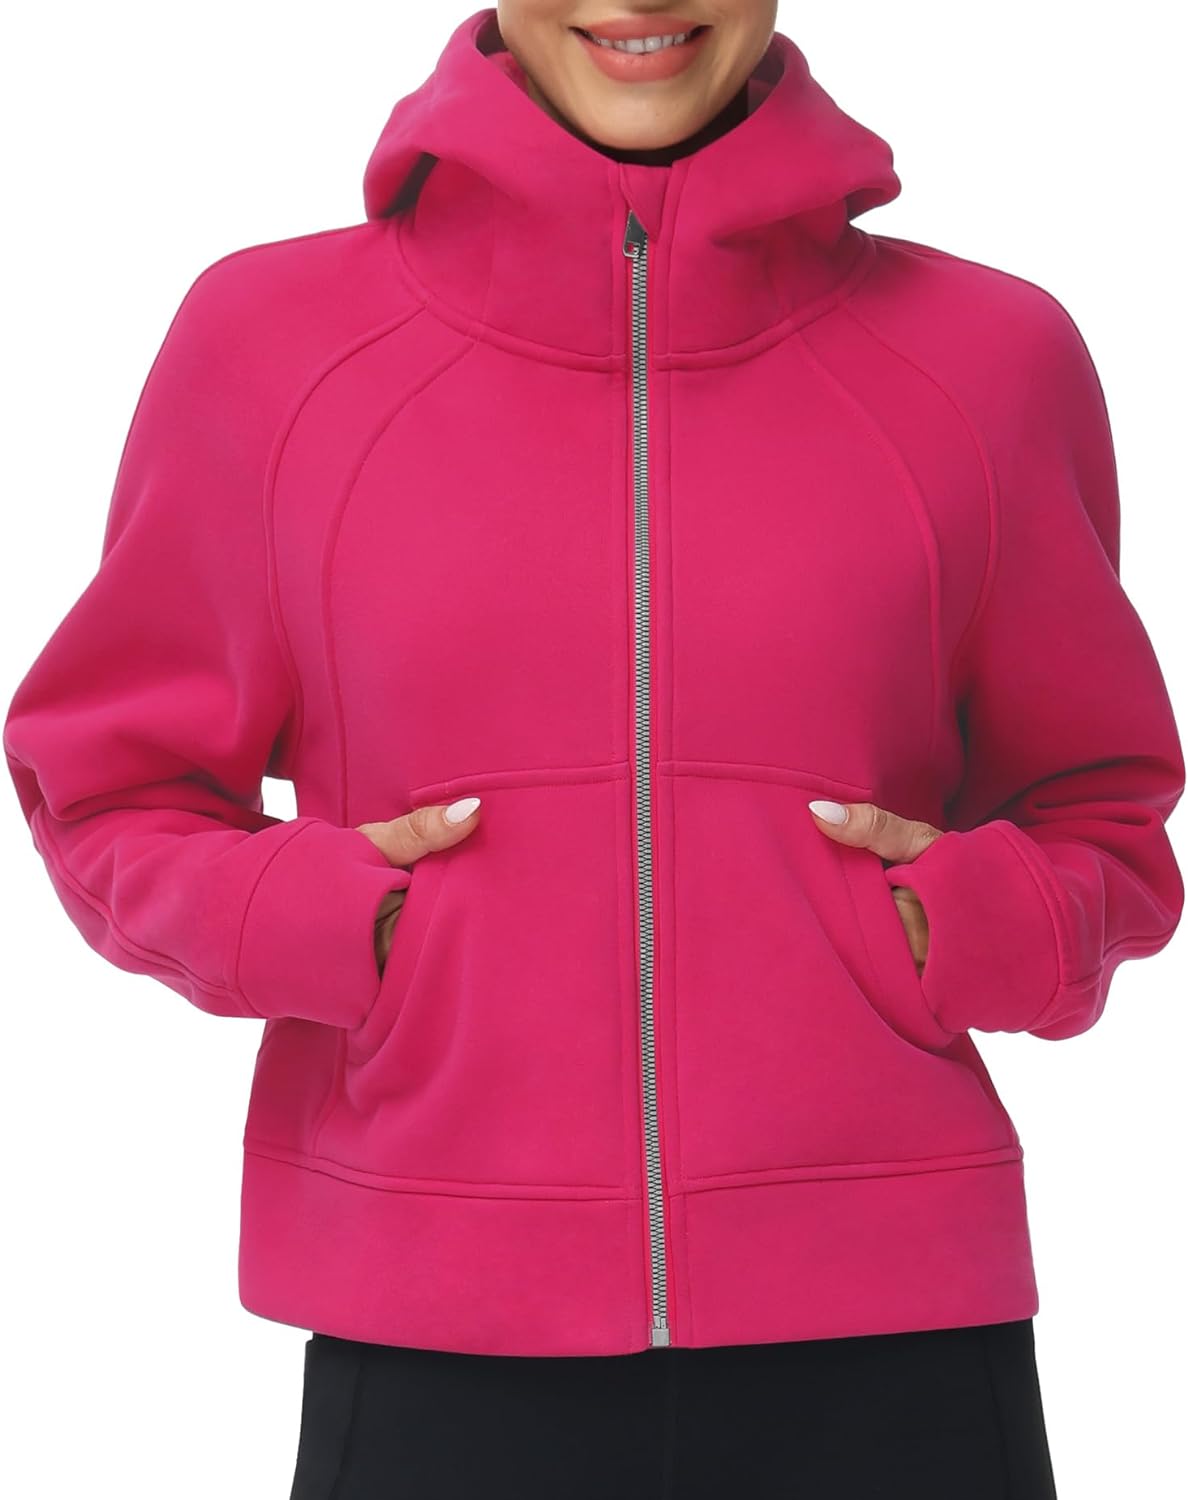 THE GYM PEOPLE Women's Full-Zip Up Hoodies Jacket Fleece